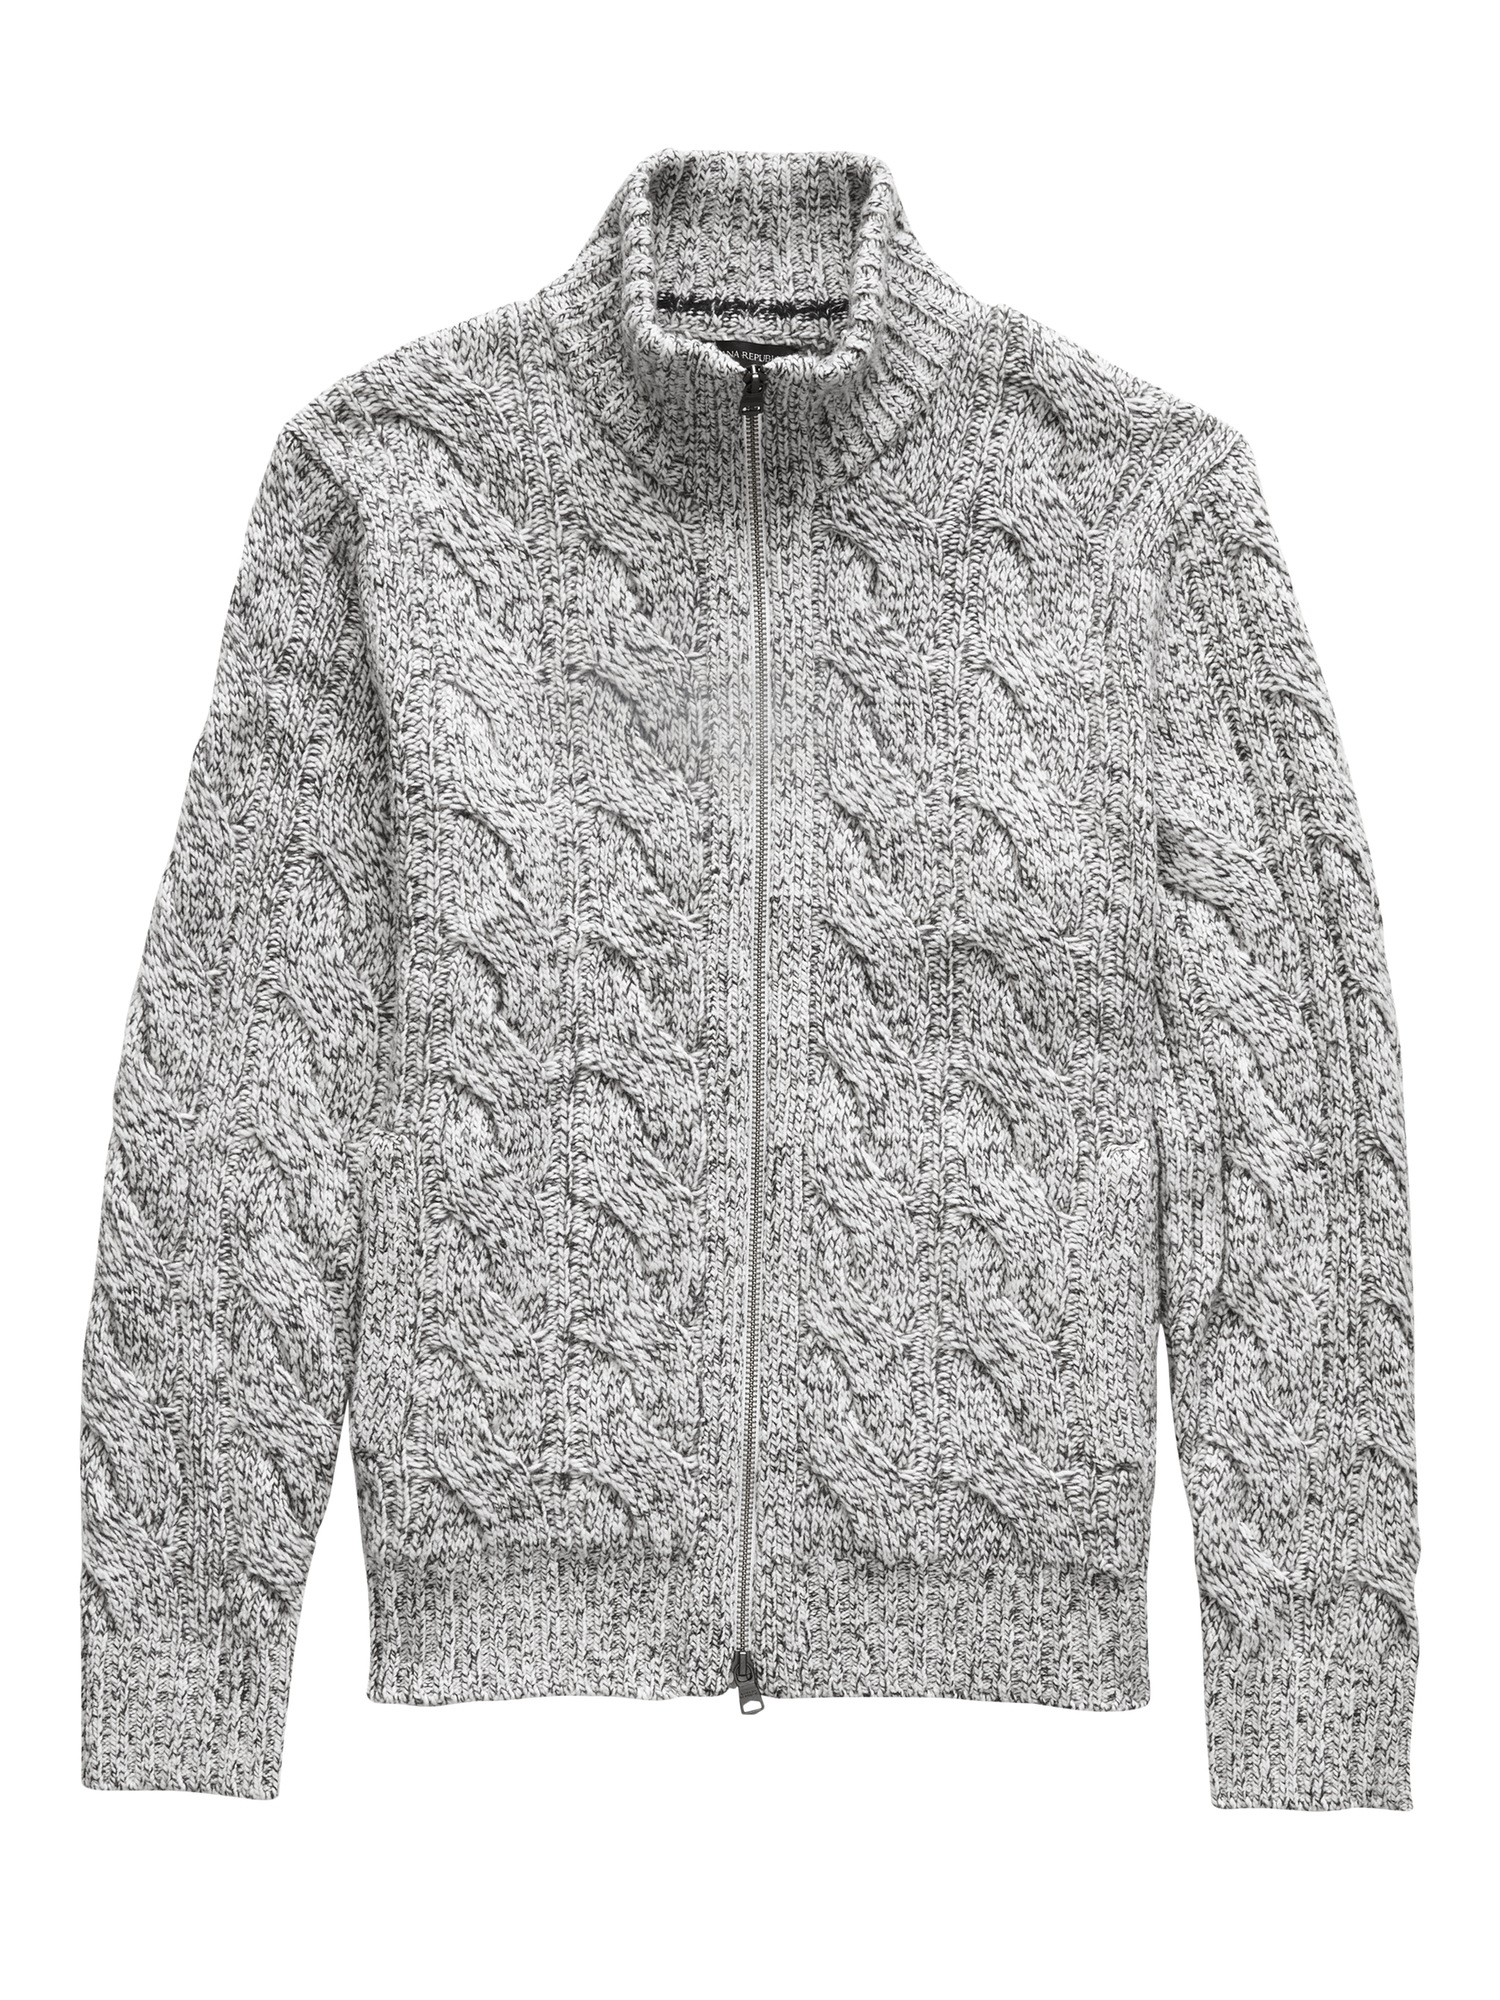 Marled Sweater Jacket